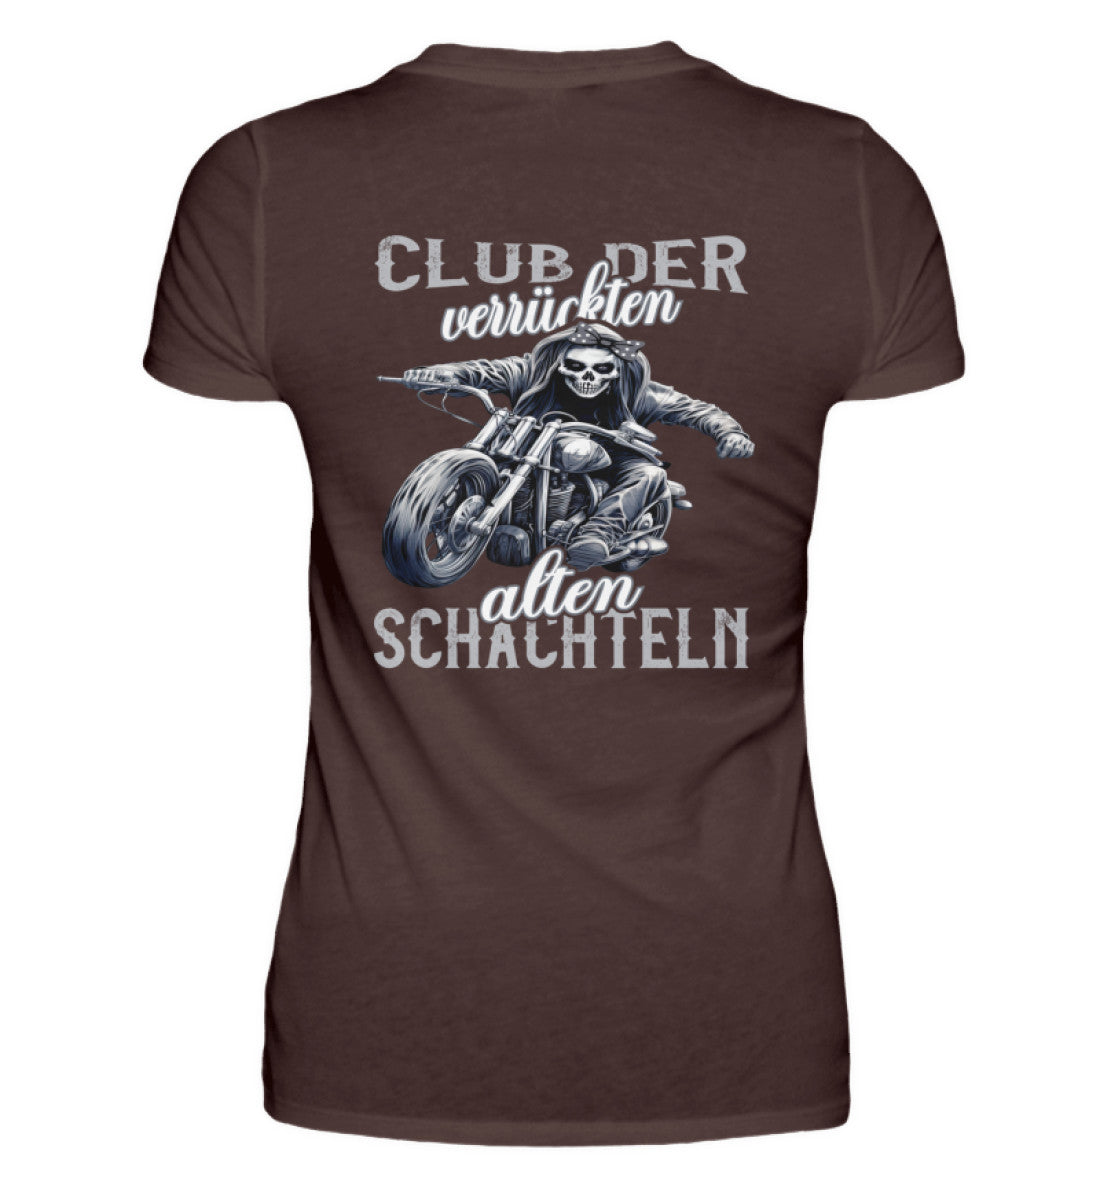 Ein Bikerin T-Shirt für Motorradfahrerinnen von Wingbikers mit dem Aufdruck, Club der verrückten alten Schachteln - mit Back Print, in braun.